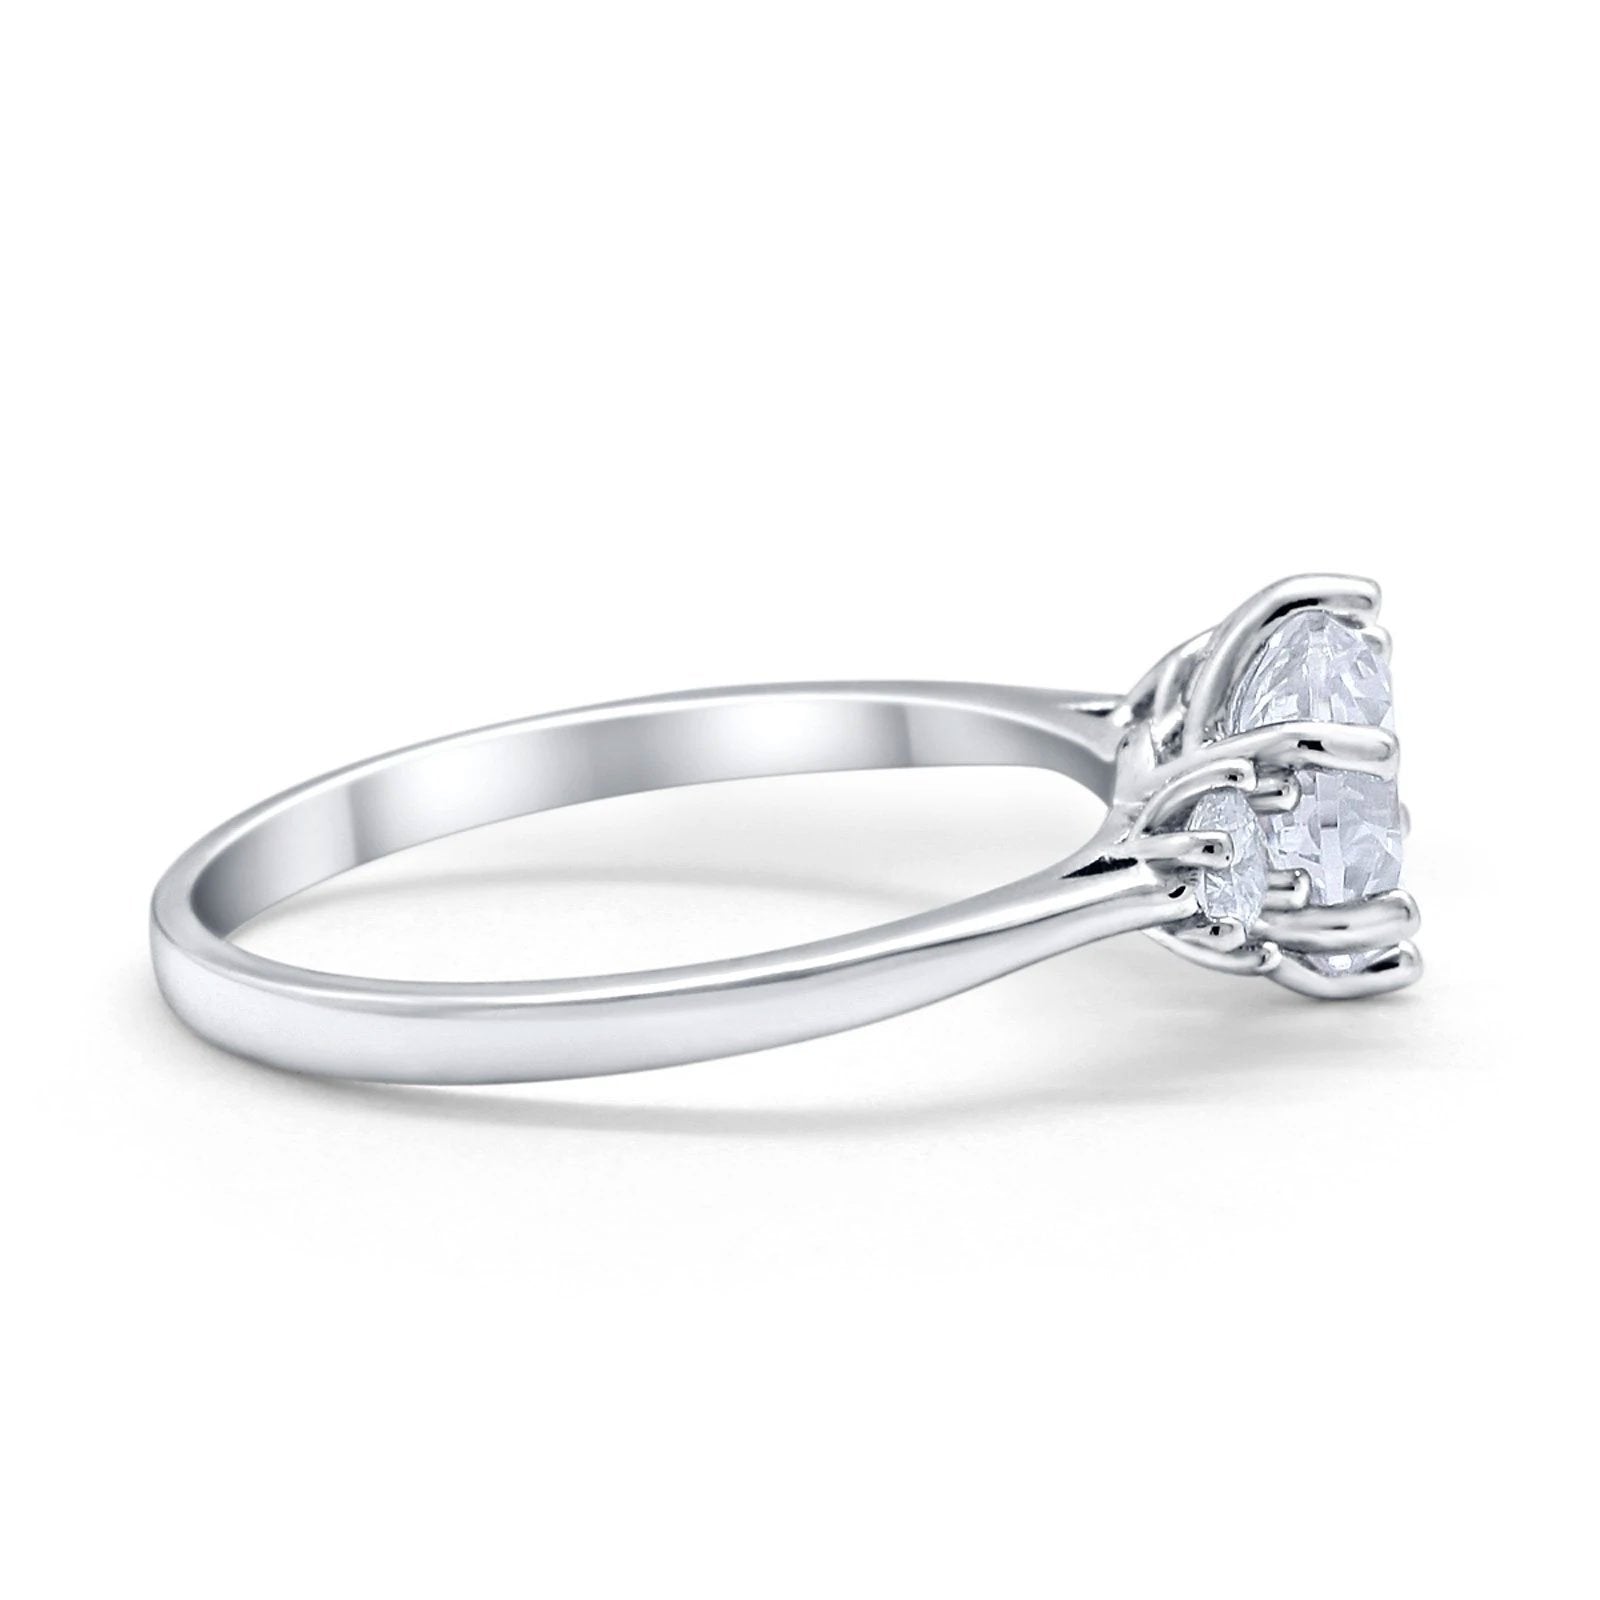 14K Gold Three Stone Wedding Engagement Bridal Ring Round Shape Simulated Cubic Zirconia